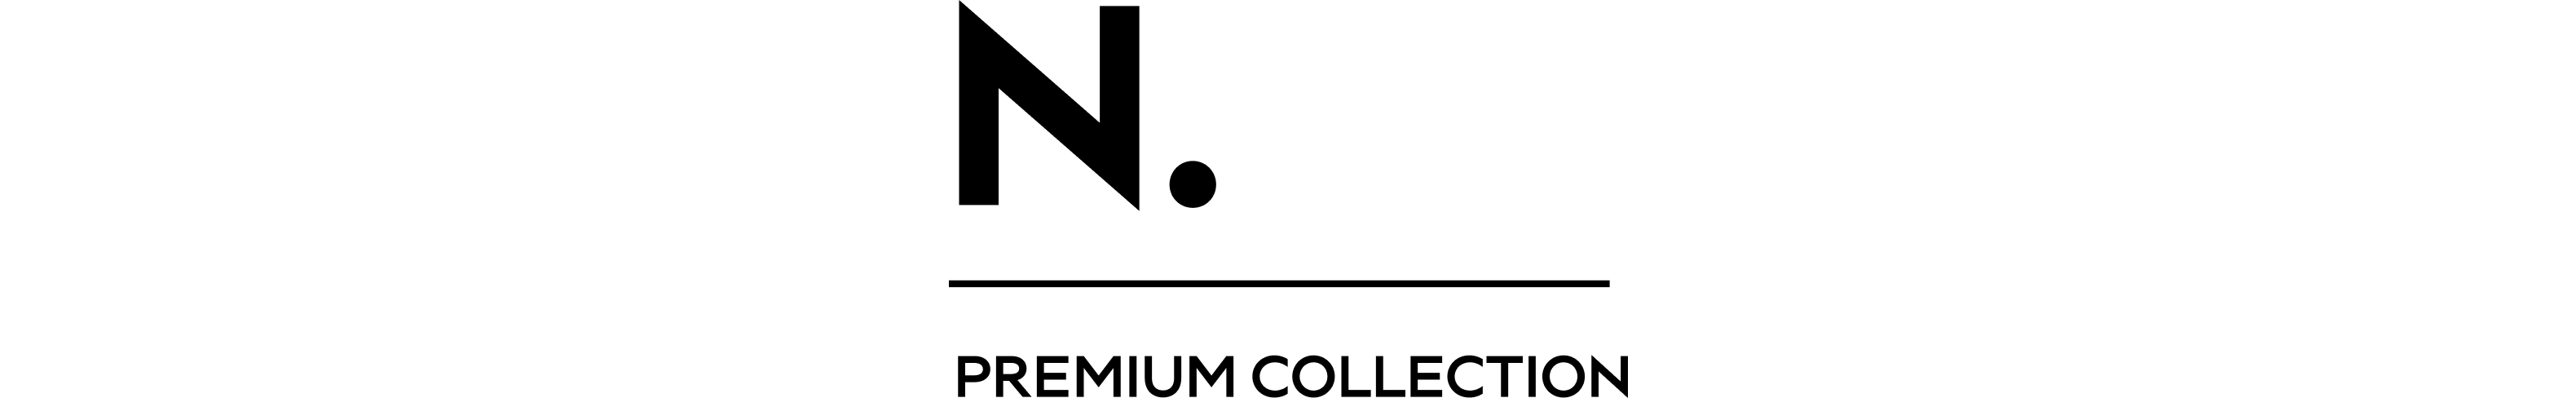 NEW dt logo